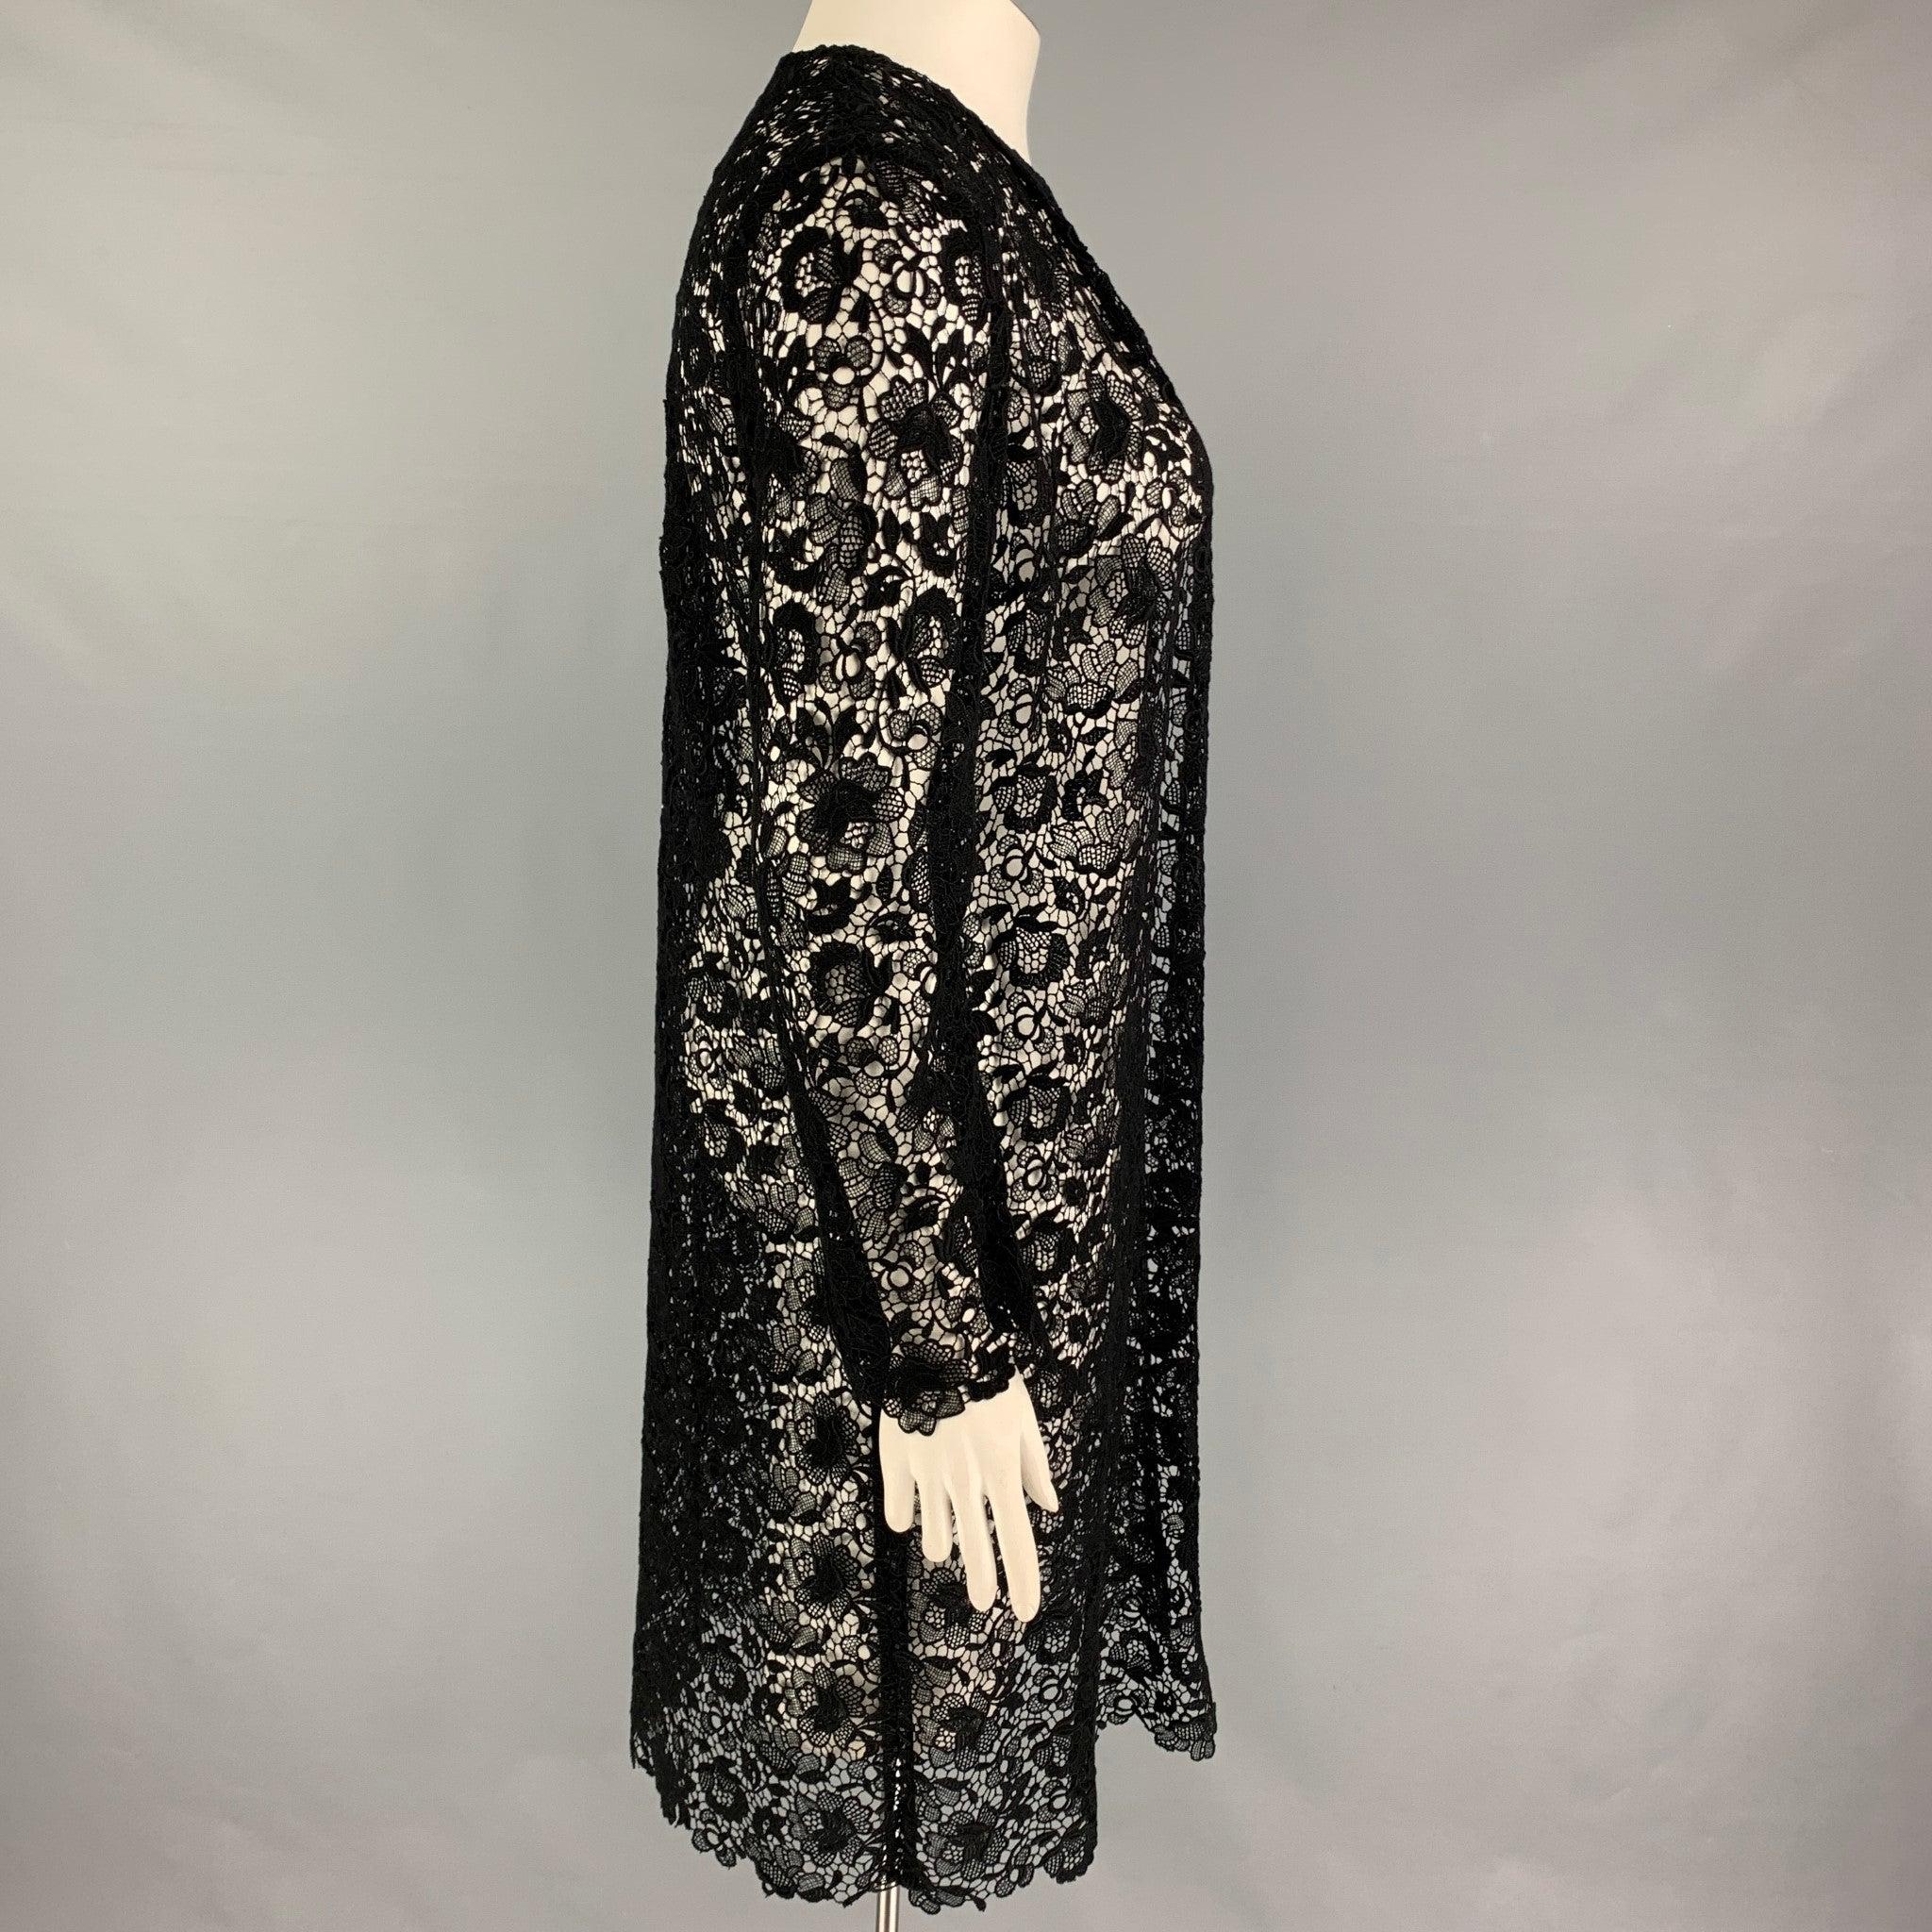 Der Mantel der RALPH LAUREN Collection besteht aus schwarzer Baumwolle/Polyester, hat einen kragenlosen Schnitt und ist vorne offen.
Neu mit Tags.
 

Markiert:  12 

Abmessungen: 
 
Schultern: 16 Zoll Büste: 40 Zoll Ärmel: 26 Zoll Länge: 41 Zoll 
 
